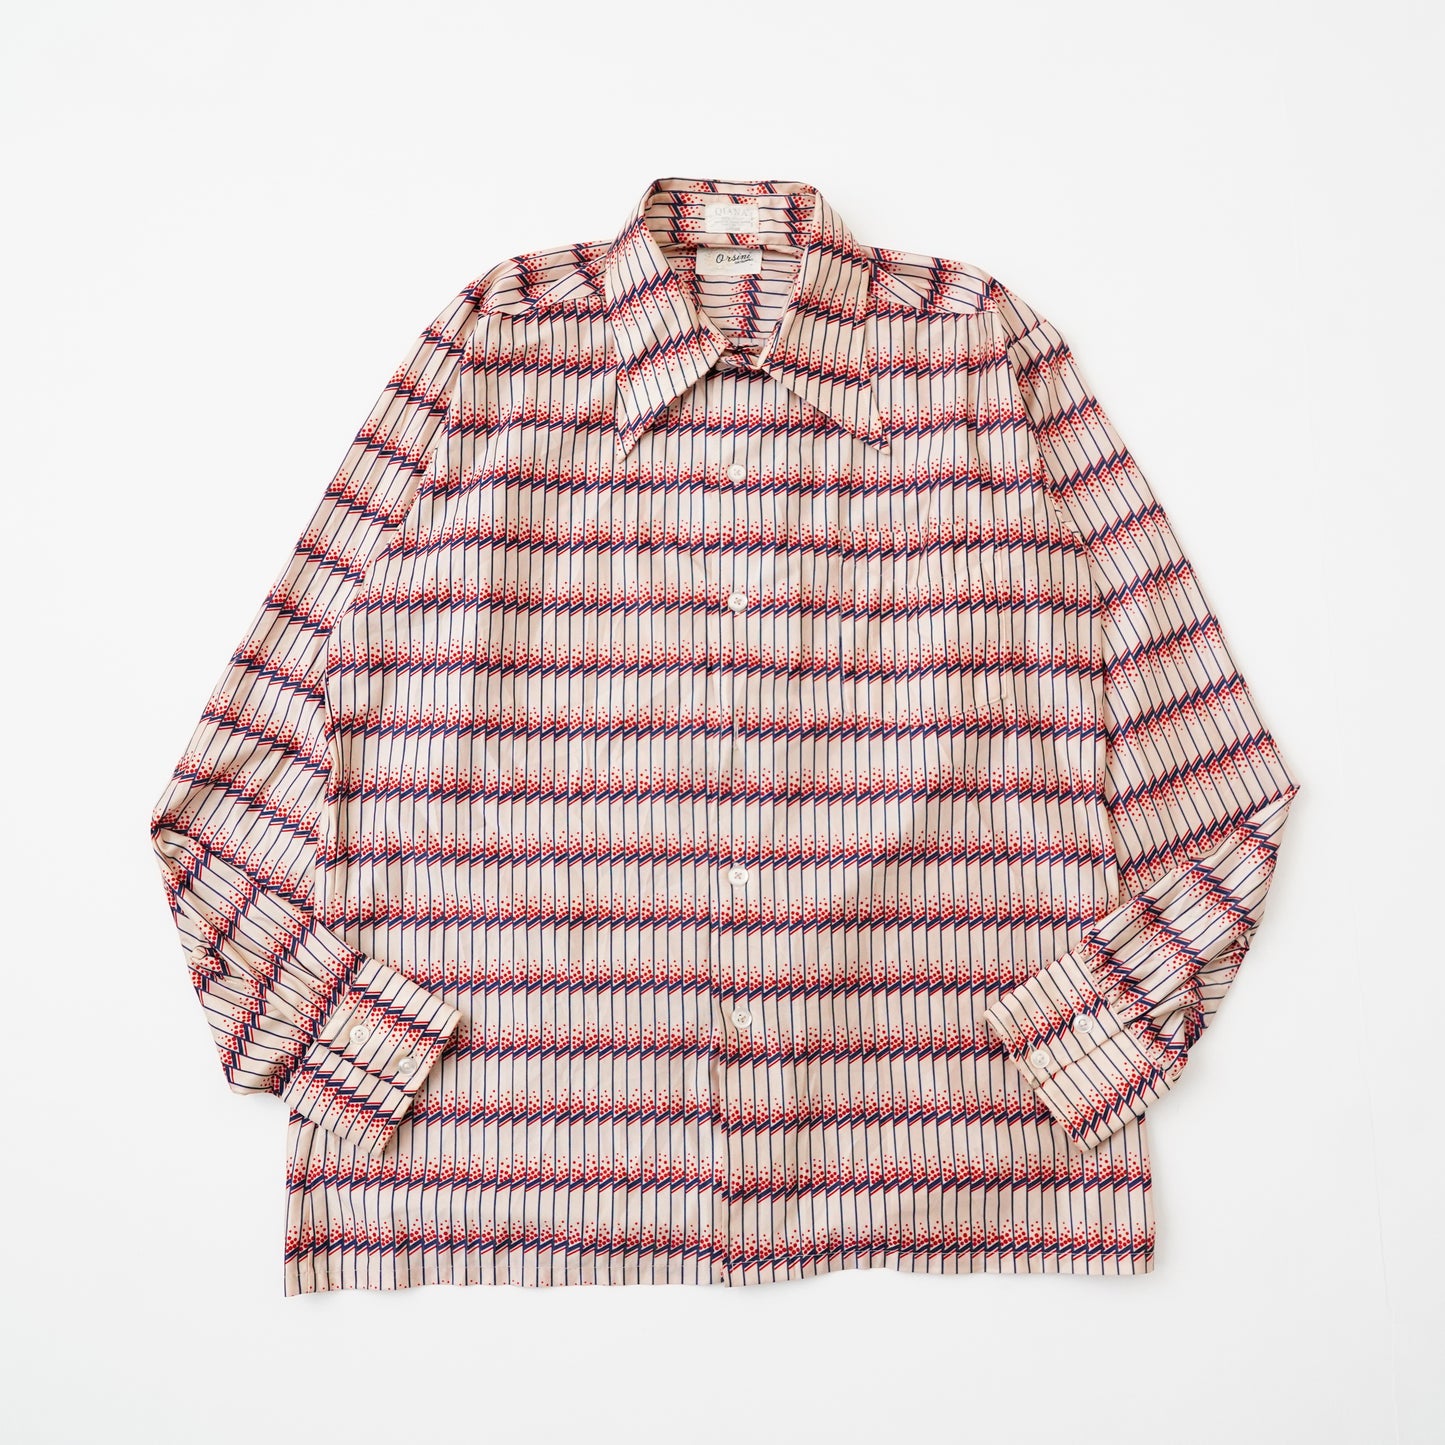 70s Pattern shirts